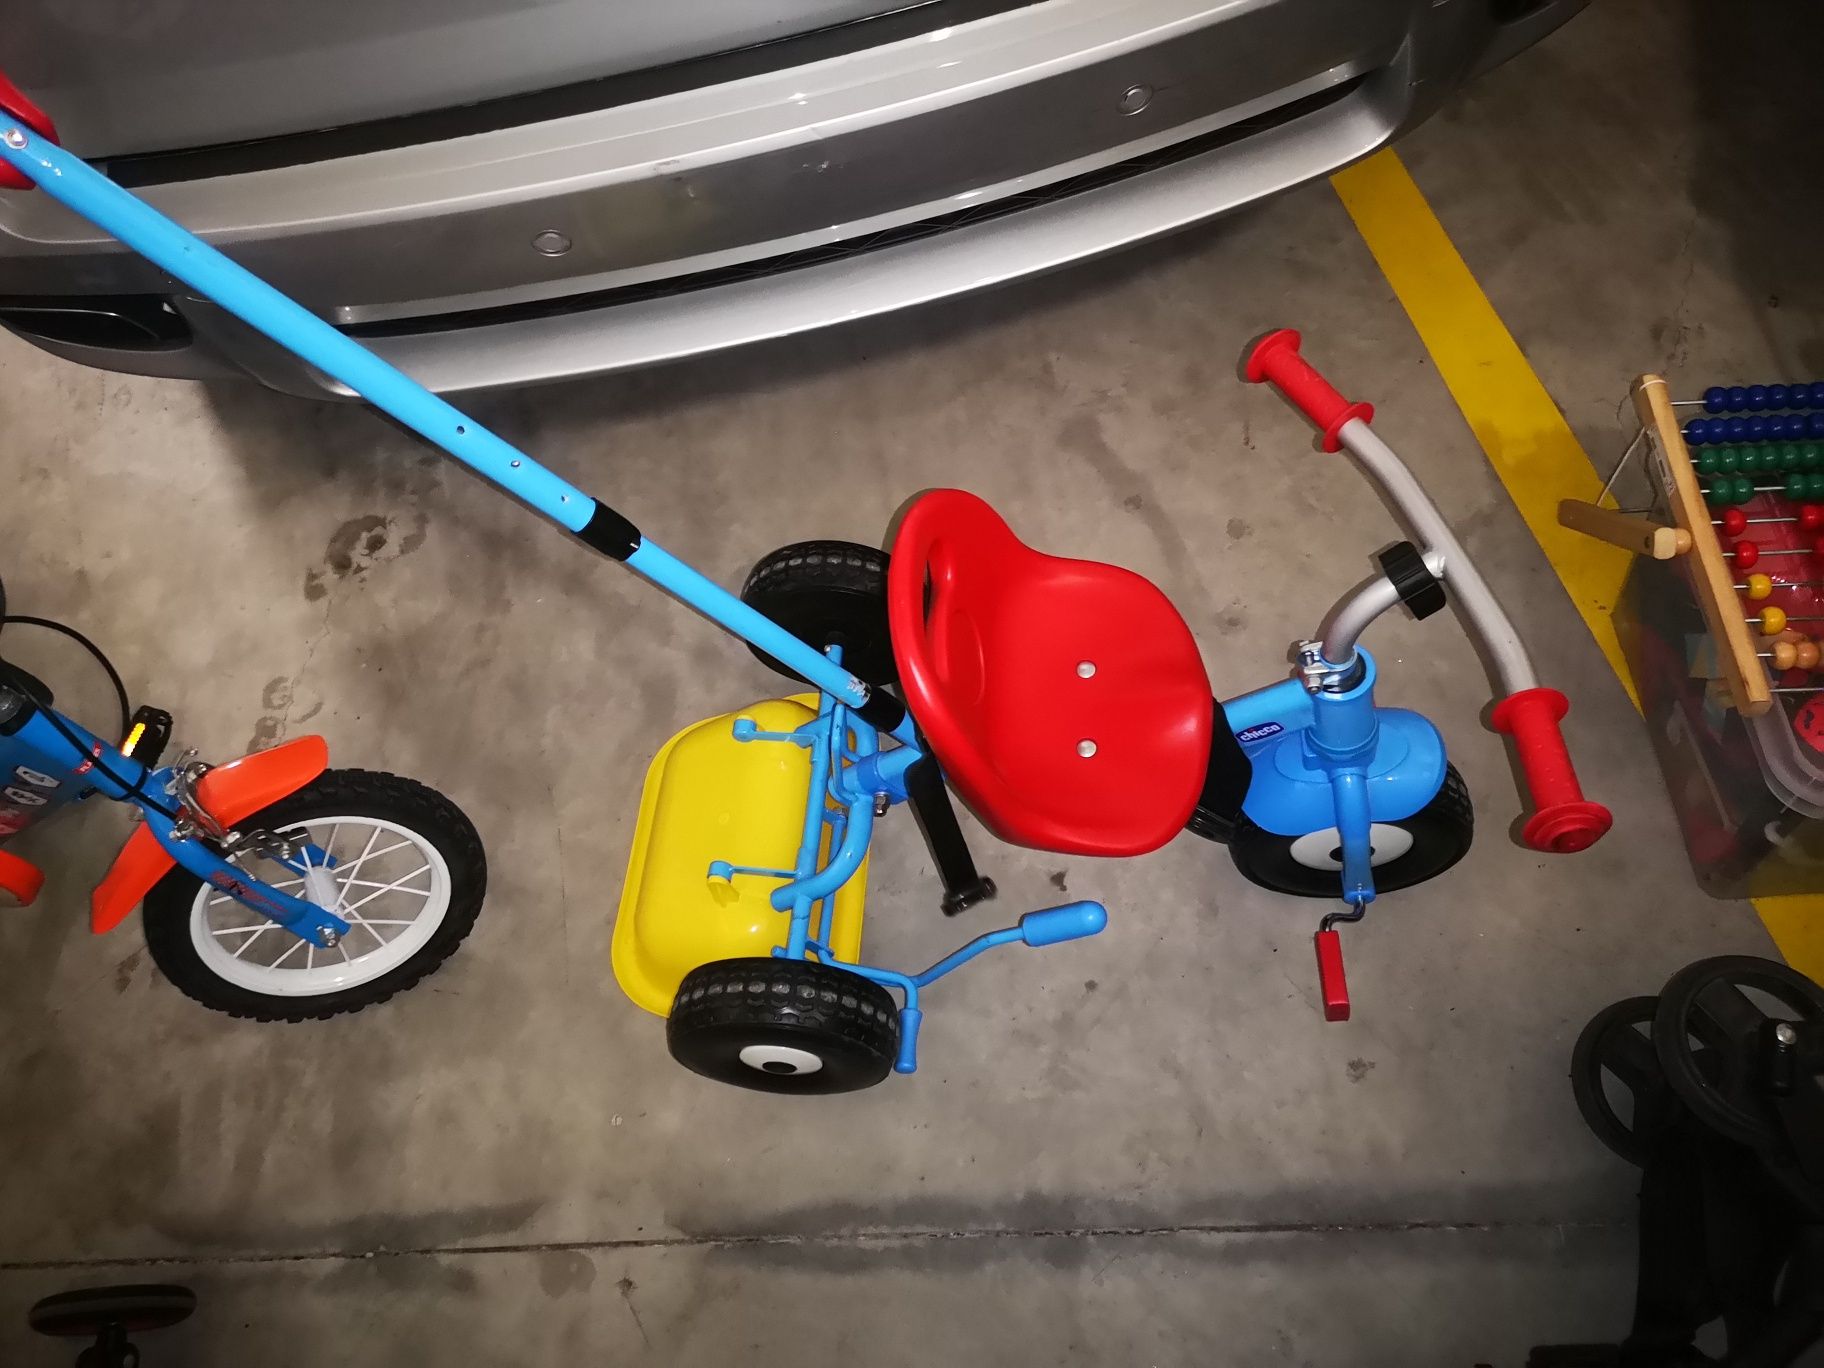 Trotinete, triciclo e carrinho de criança